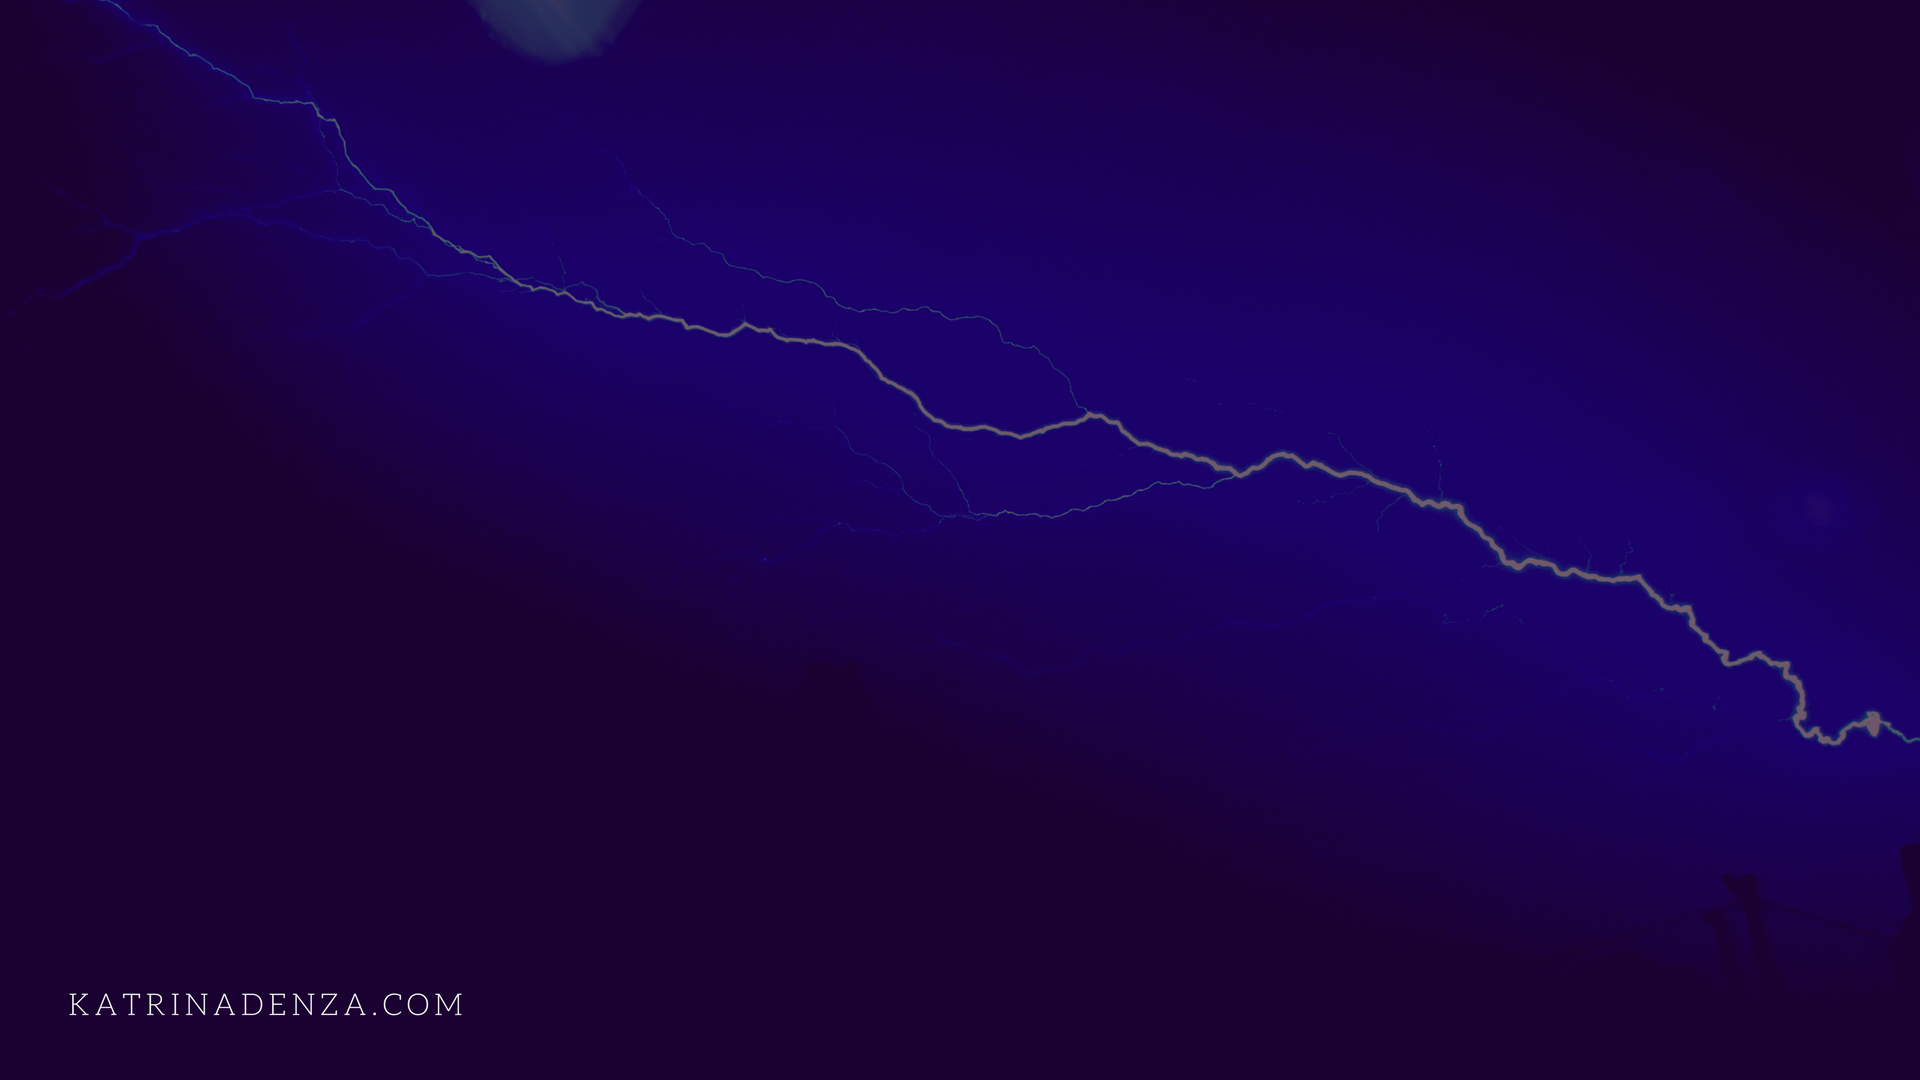 Lightning in a dark sky